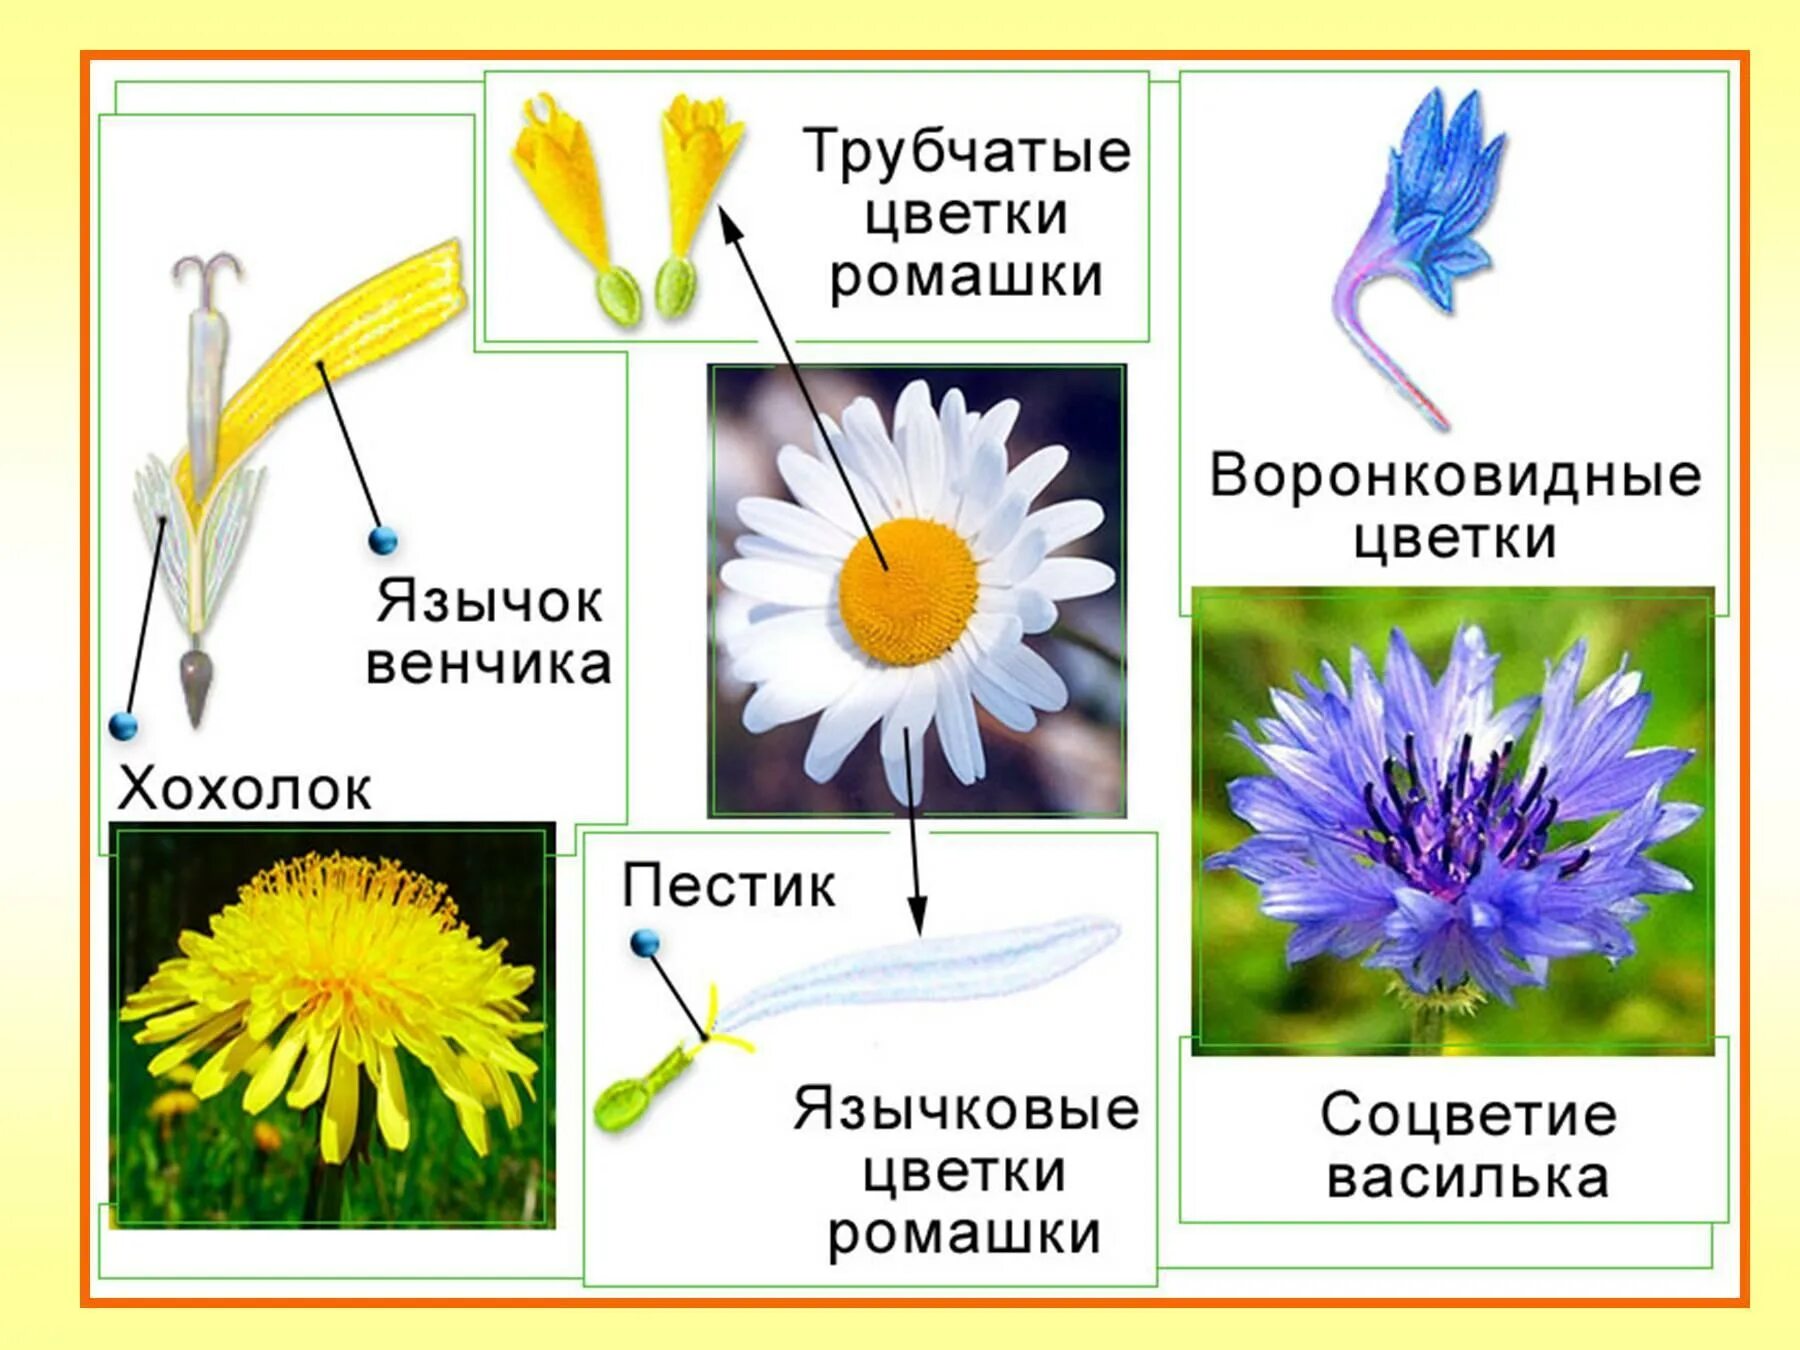 Соцветия первого типа имеет одуванчик. Строение трубчатых цветков сложноцветных. Схема семейства сложноцветных Астровые. Строение соцветия сложноцветных растений. Астровые семейство язычковые.